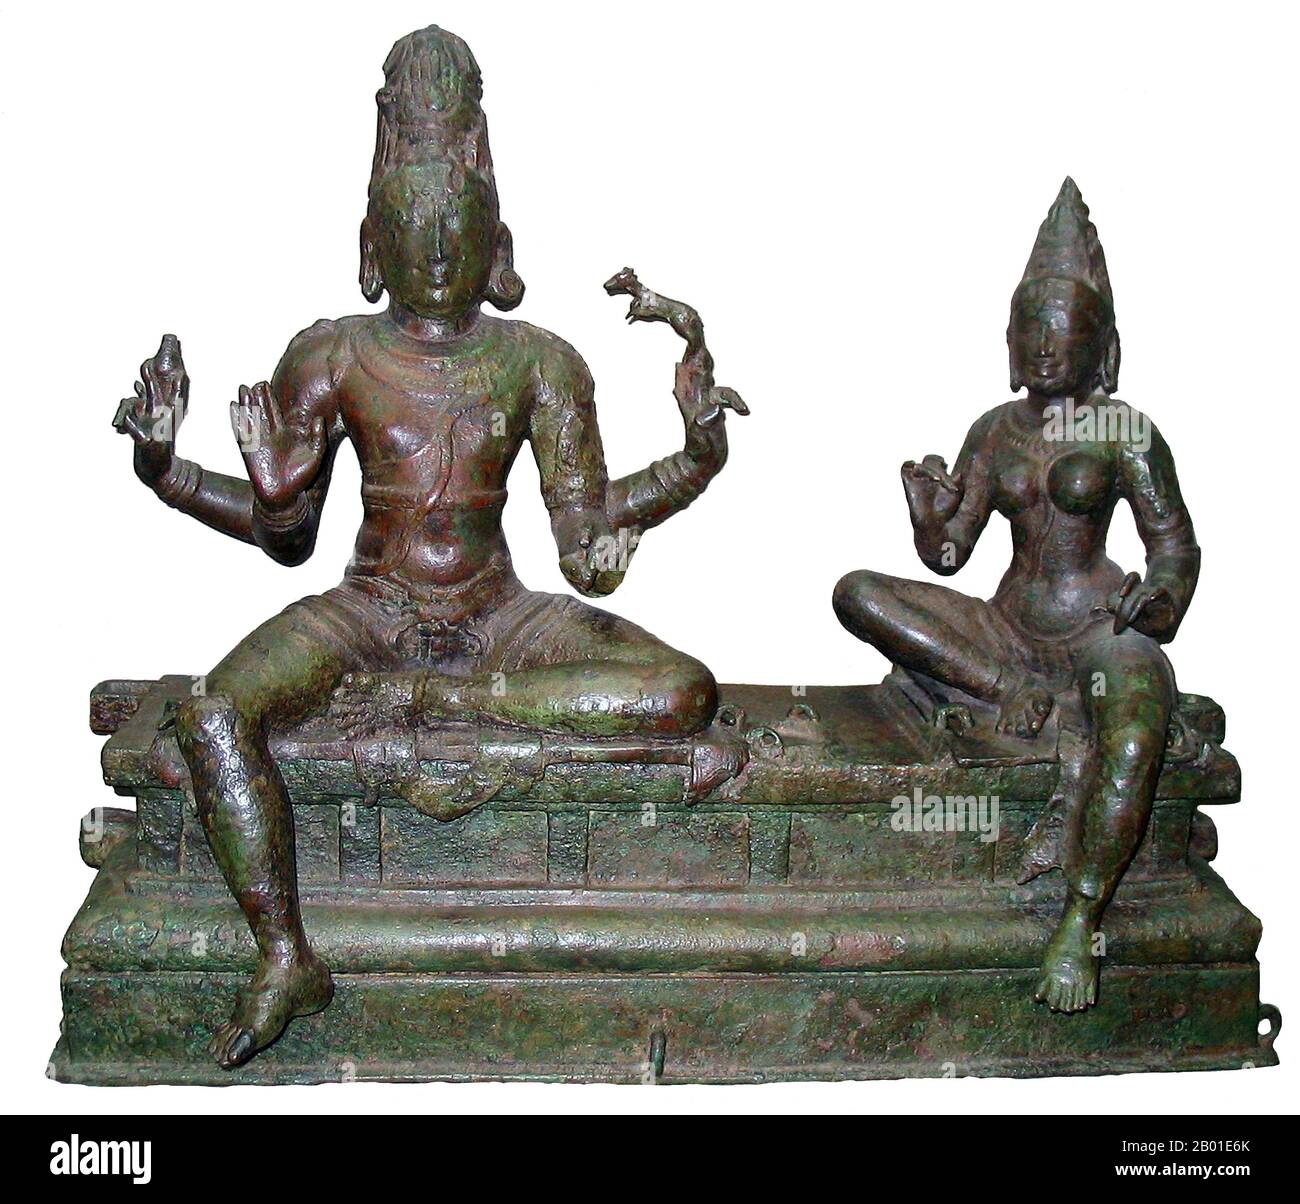 Inde : Somaskanda (Shiva et sa consort Uma), Inde du sud, dynastie Chola, 12th siècle. Photo de Quadell (licence CC BY-sa 3,0). Shiva (Sanskrit: शिव Śiva, signifiant "heureux" ) est une divinité hindoue majeure, et est le Dieu destroyer ou transformateur parmi le Trimurti, la Trinité hindoue des aspects primaires du divin. Dans la tradition Shiva de l'hindouisme, Shiva est considéré comme le Dieu suprême. Dans la tradition de Smarta, il est considéré comme l'une des cinq formes primaires de Dieu. Les adeptes de l'hindouisme qui concentrent leur culte sur Shiva sont appelés Shaivites ou Shaivas (Sanskrit Śaiva). Banque D'Images